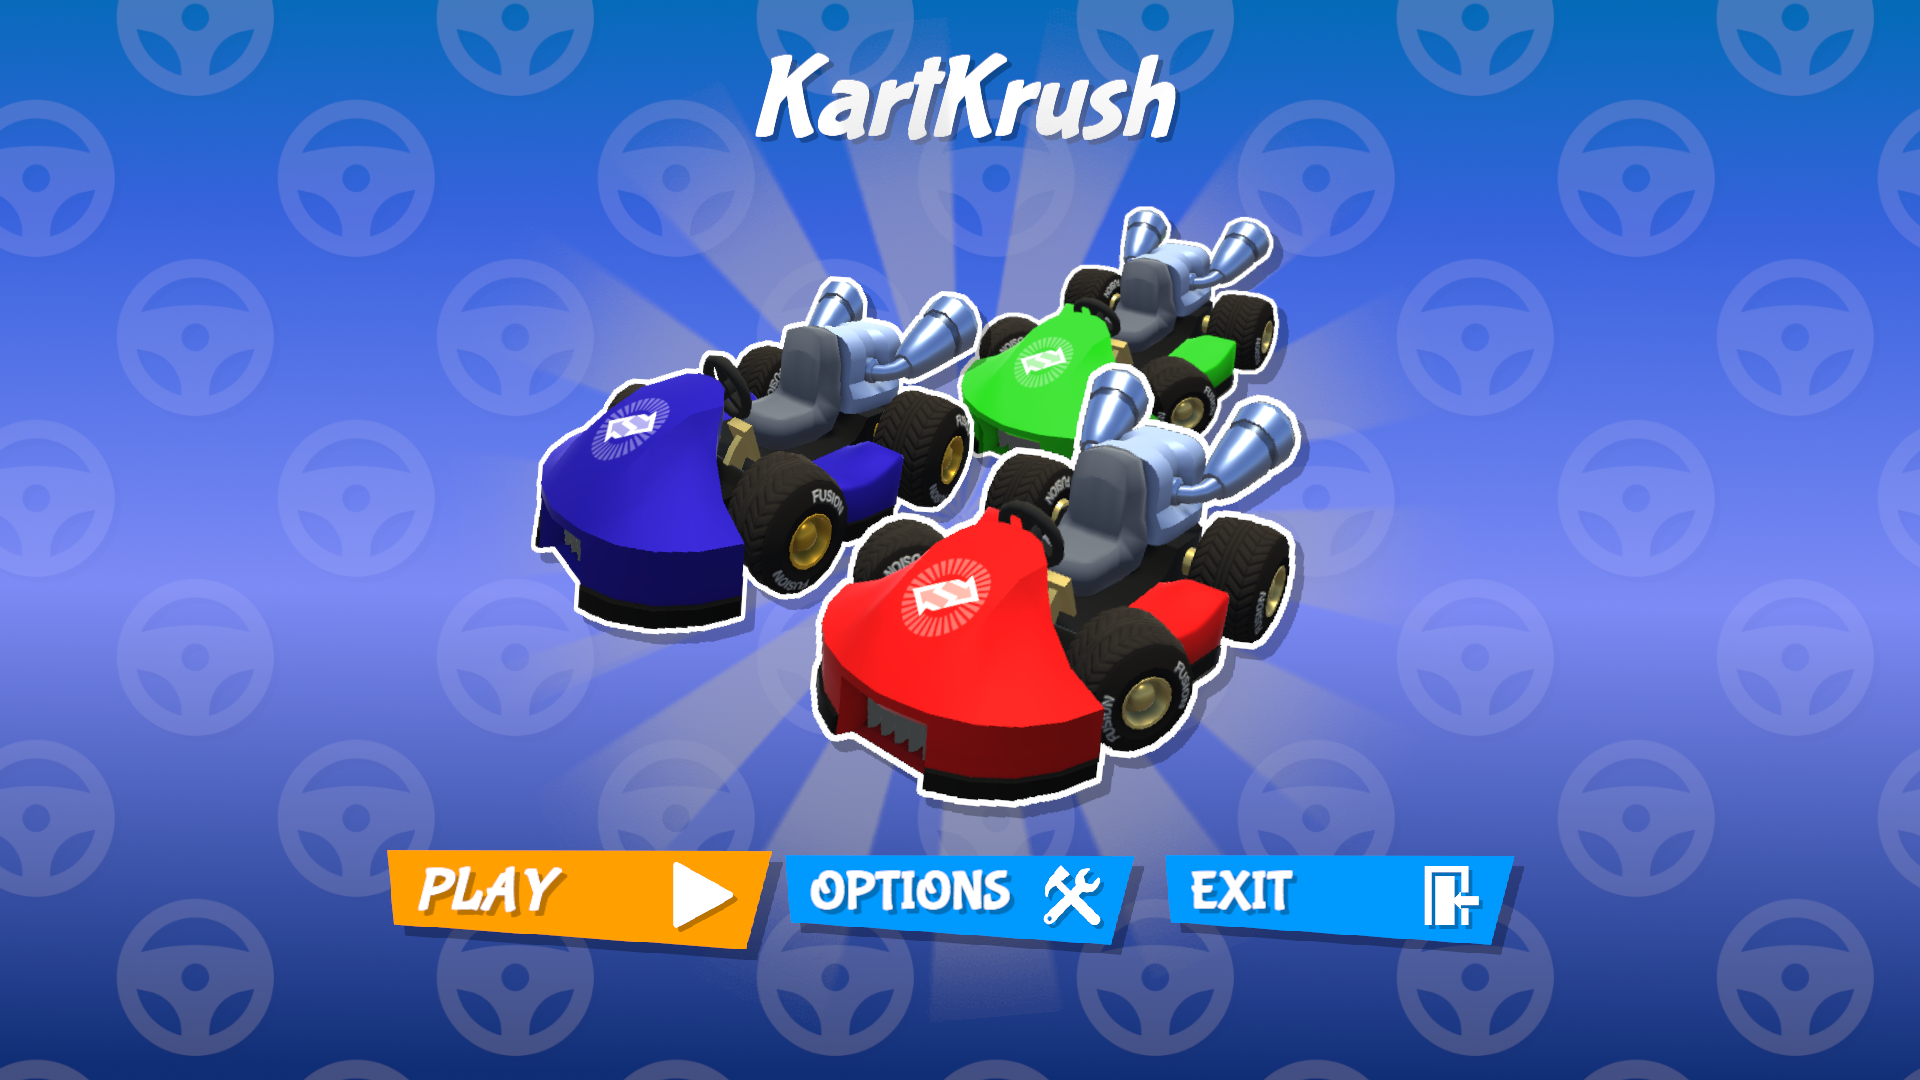 KartKrush